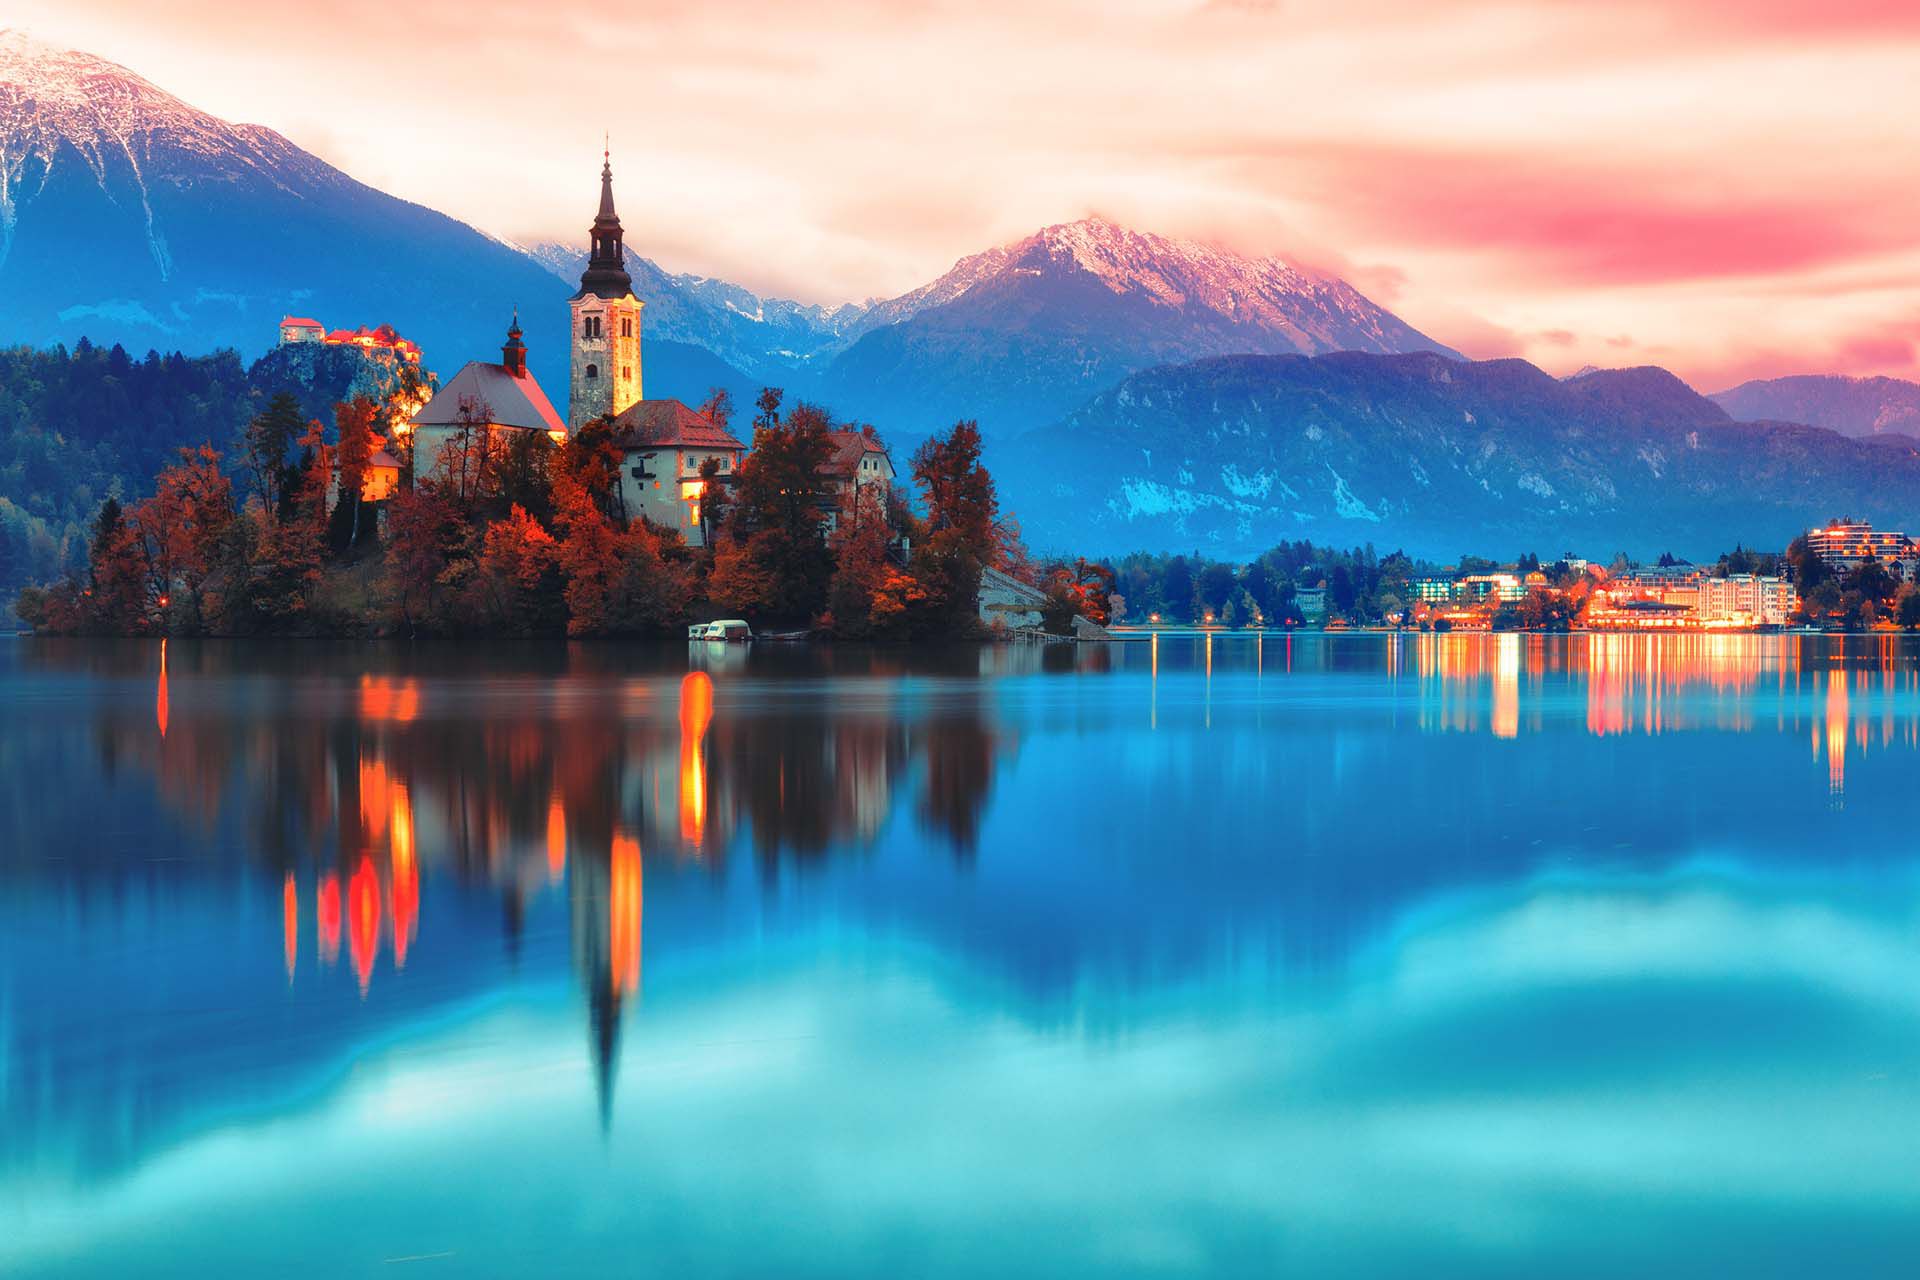 Pequeño pero perfectamente formado, hay belleza donde quiera que vayas, desde el castillo de cuento de hadas de 800 años de Predjama hasta los idílicos románticos del mágico lago Bled y los paisajes vírgenes del Parque Nacional Triglav, Eslovenia es un destino de ensueño